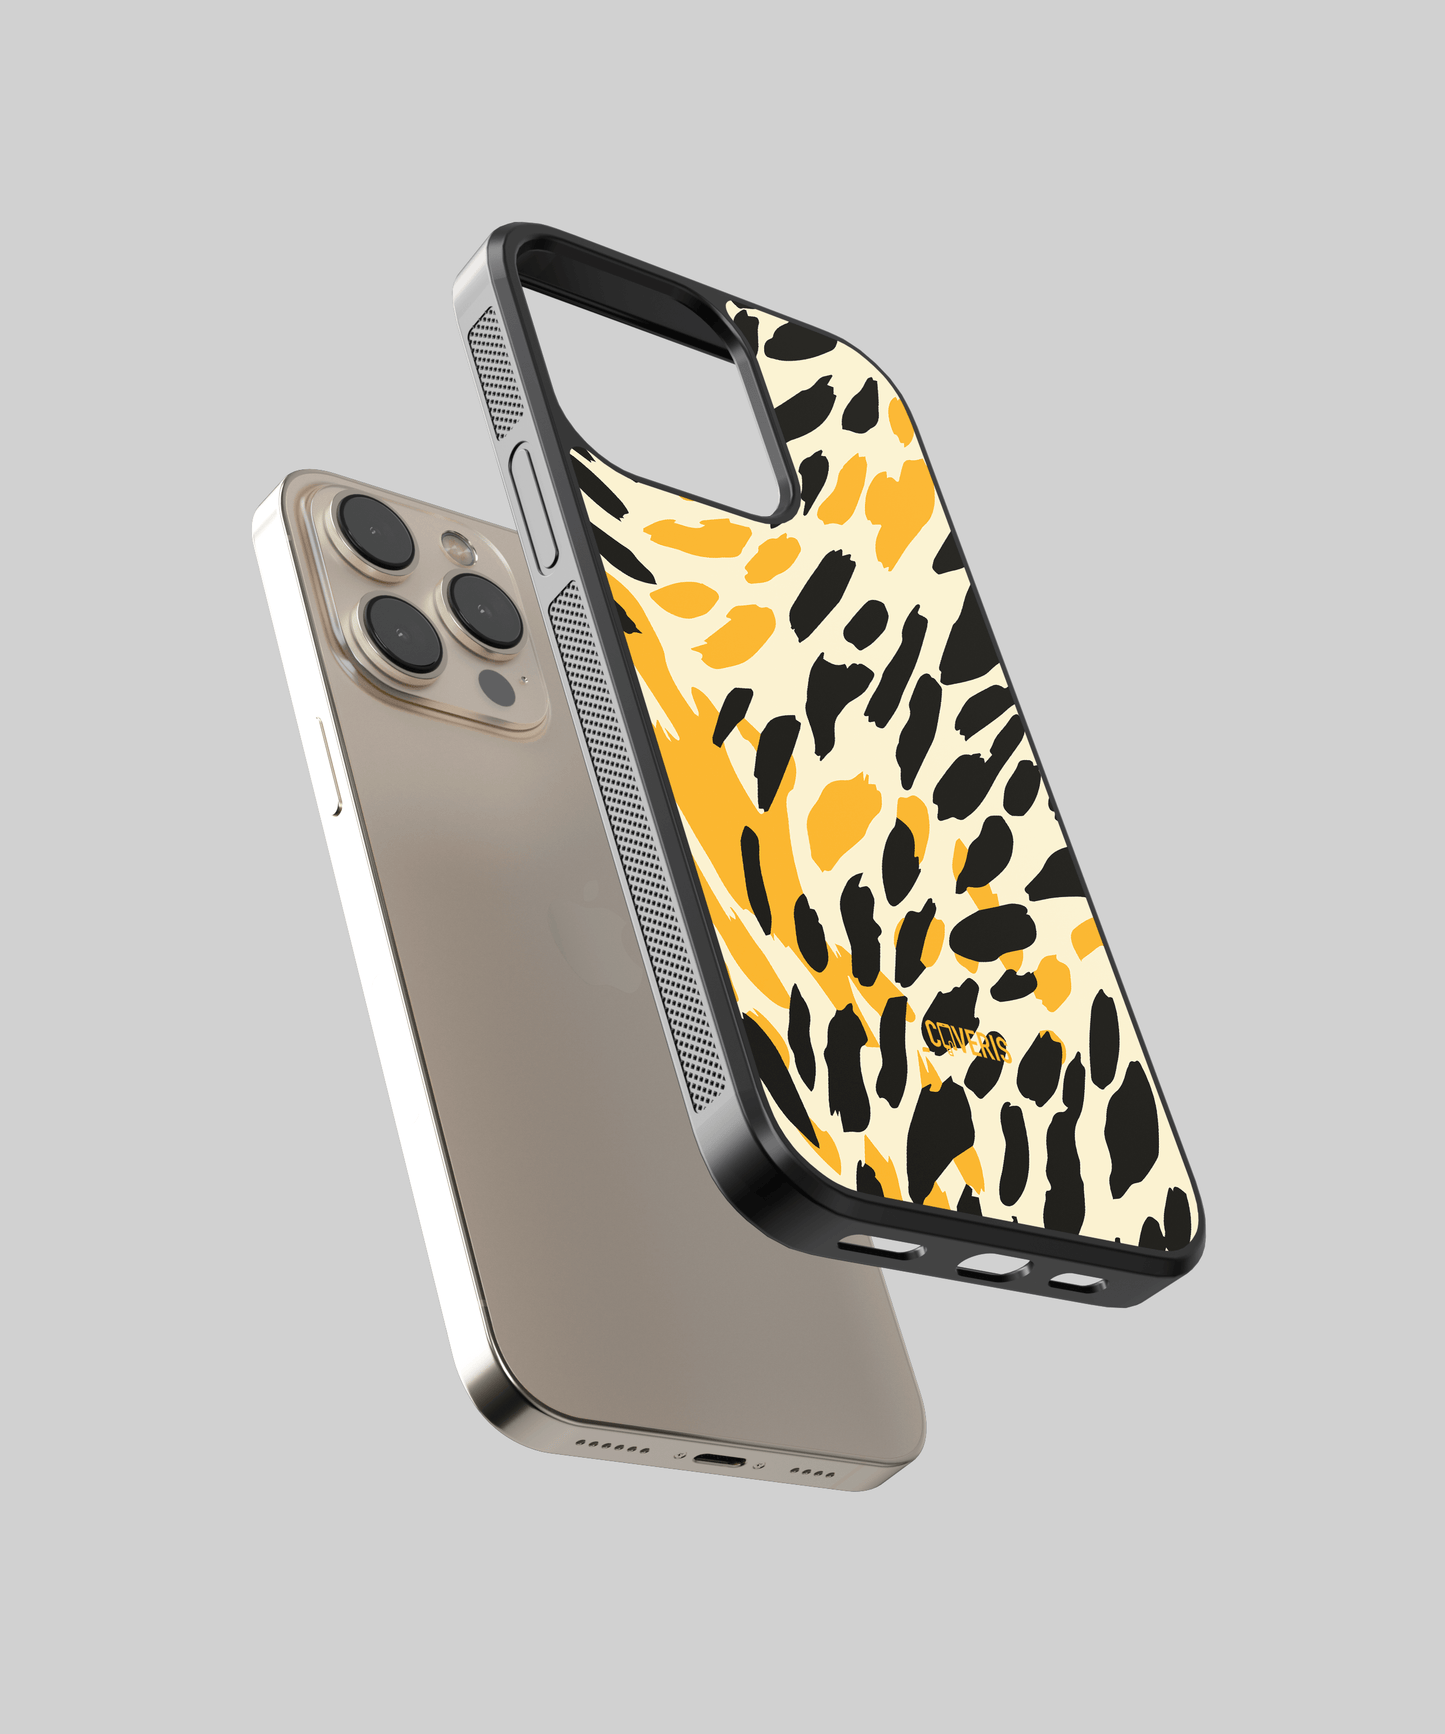 Cheetah - Samsung Galaxy A71 5G phone case